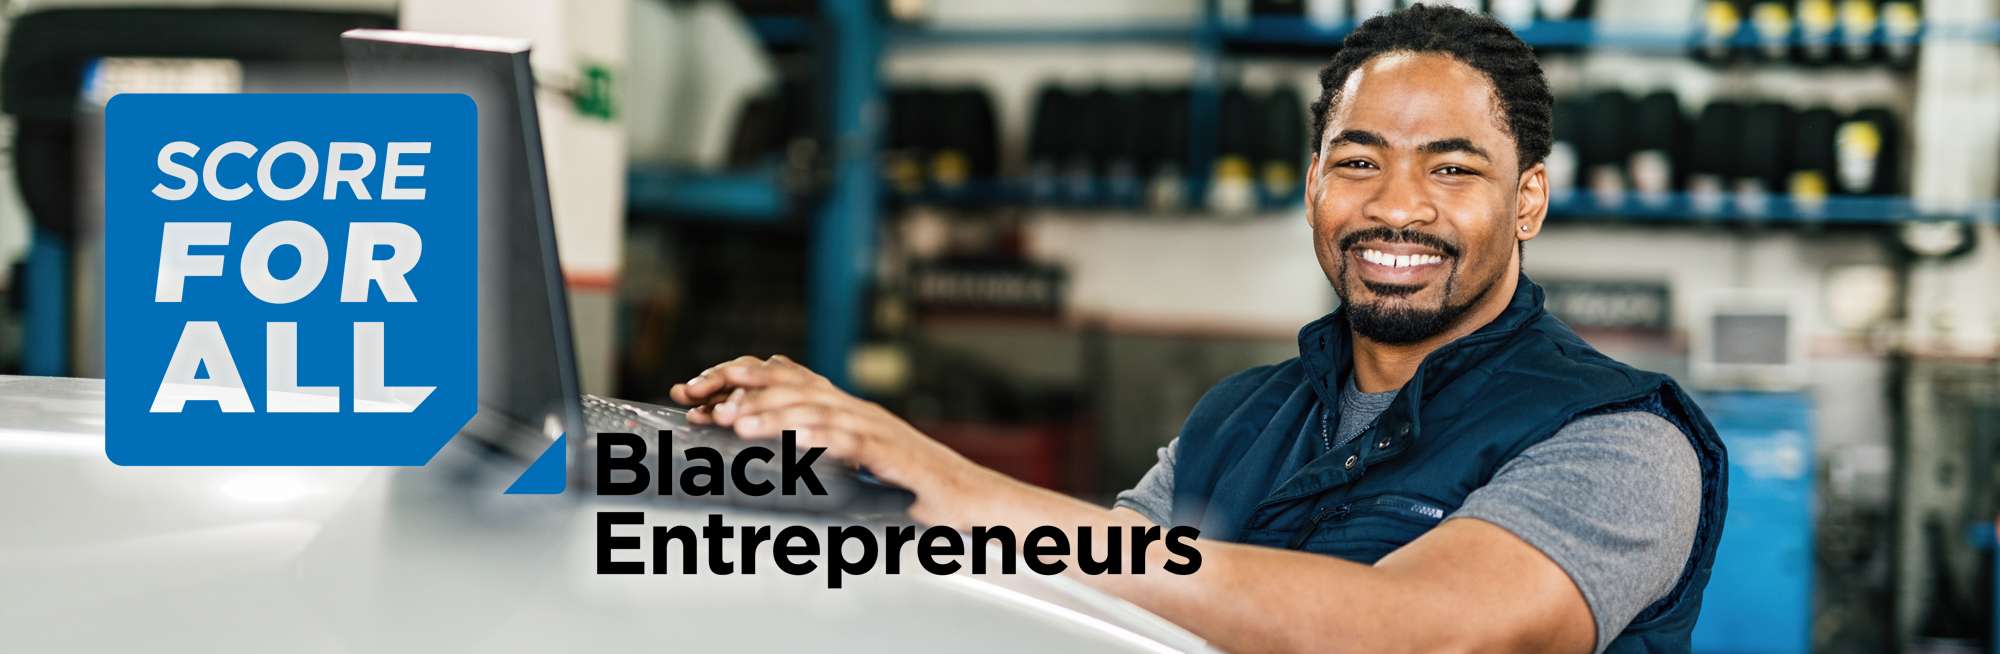 SCORE for black entrepreneurs